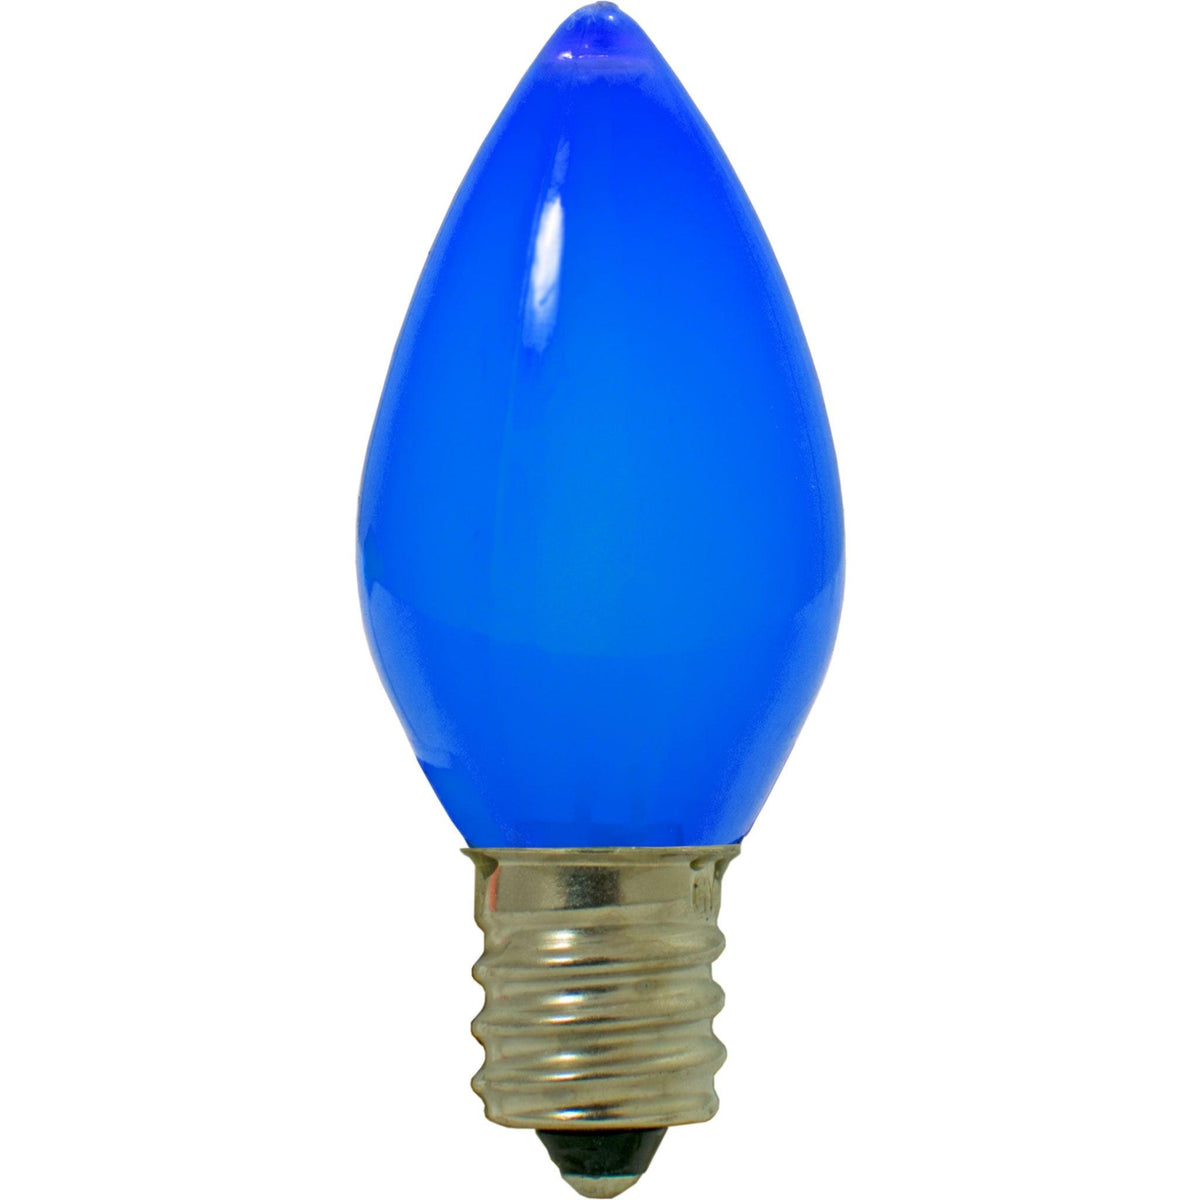 Multi-Color Solid LED Light Bulbs - Lee Display